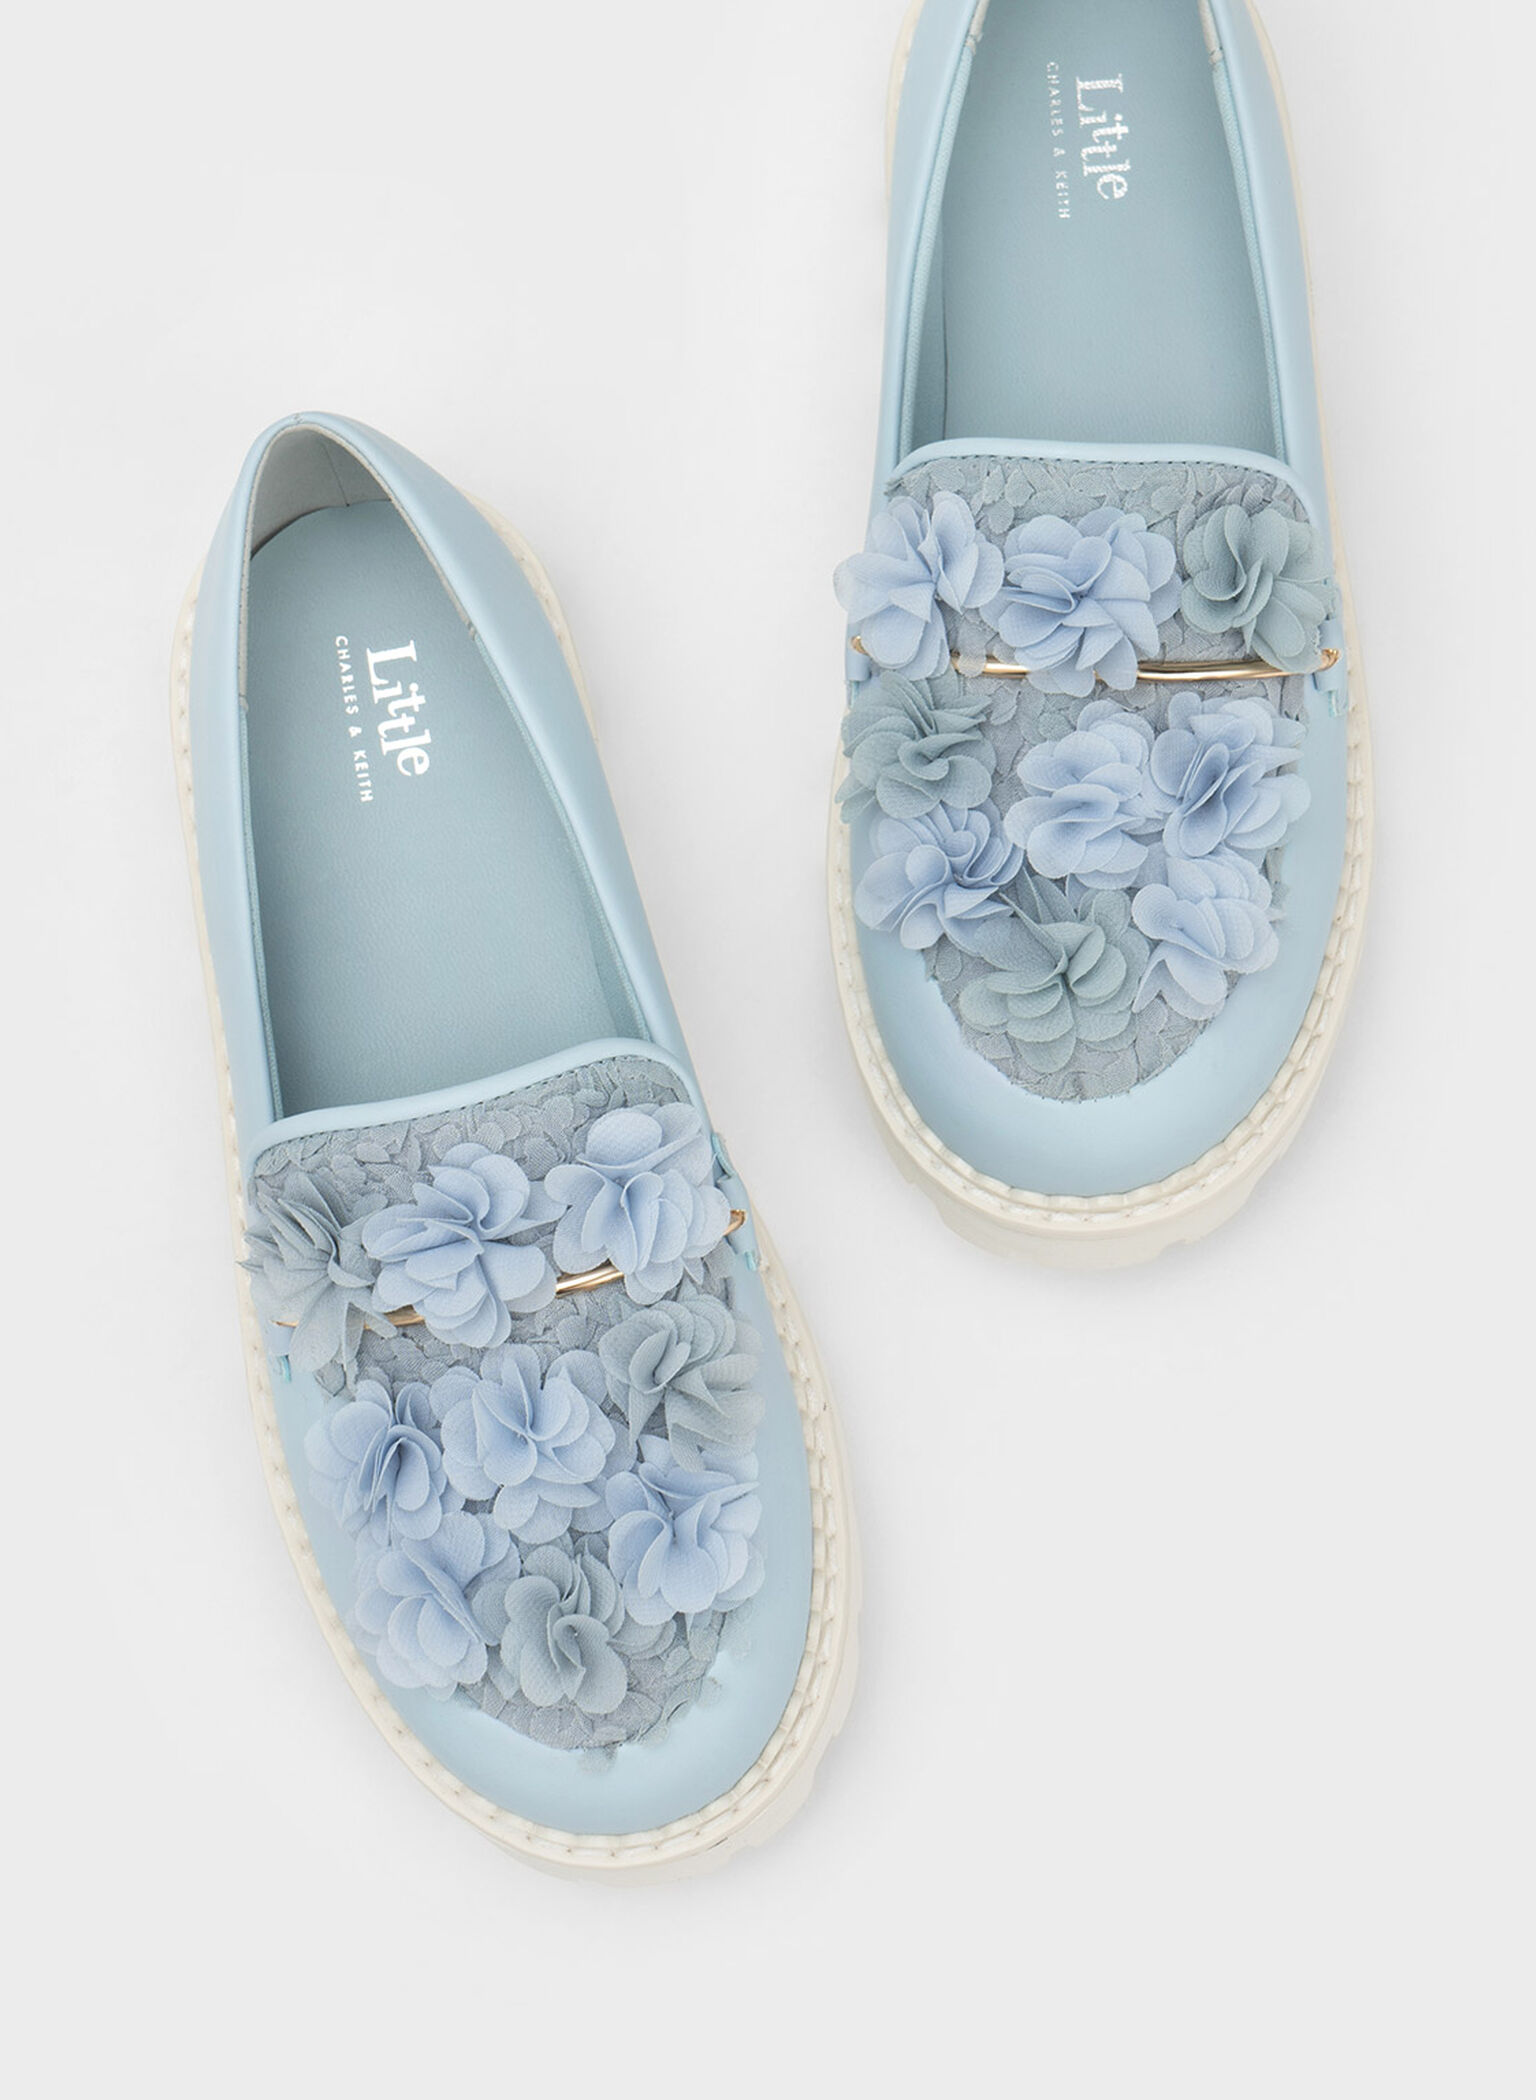 Girls' Floral Mesh Loafers, Light Blue, hi-res